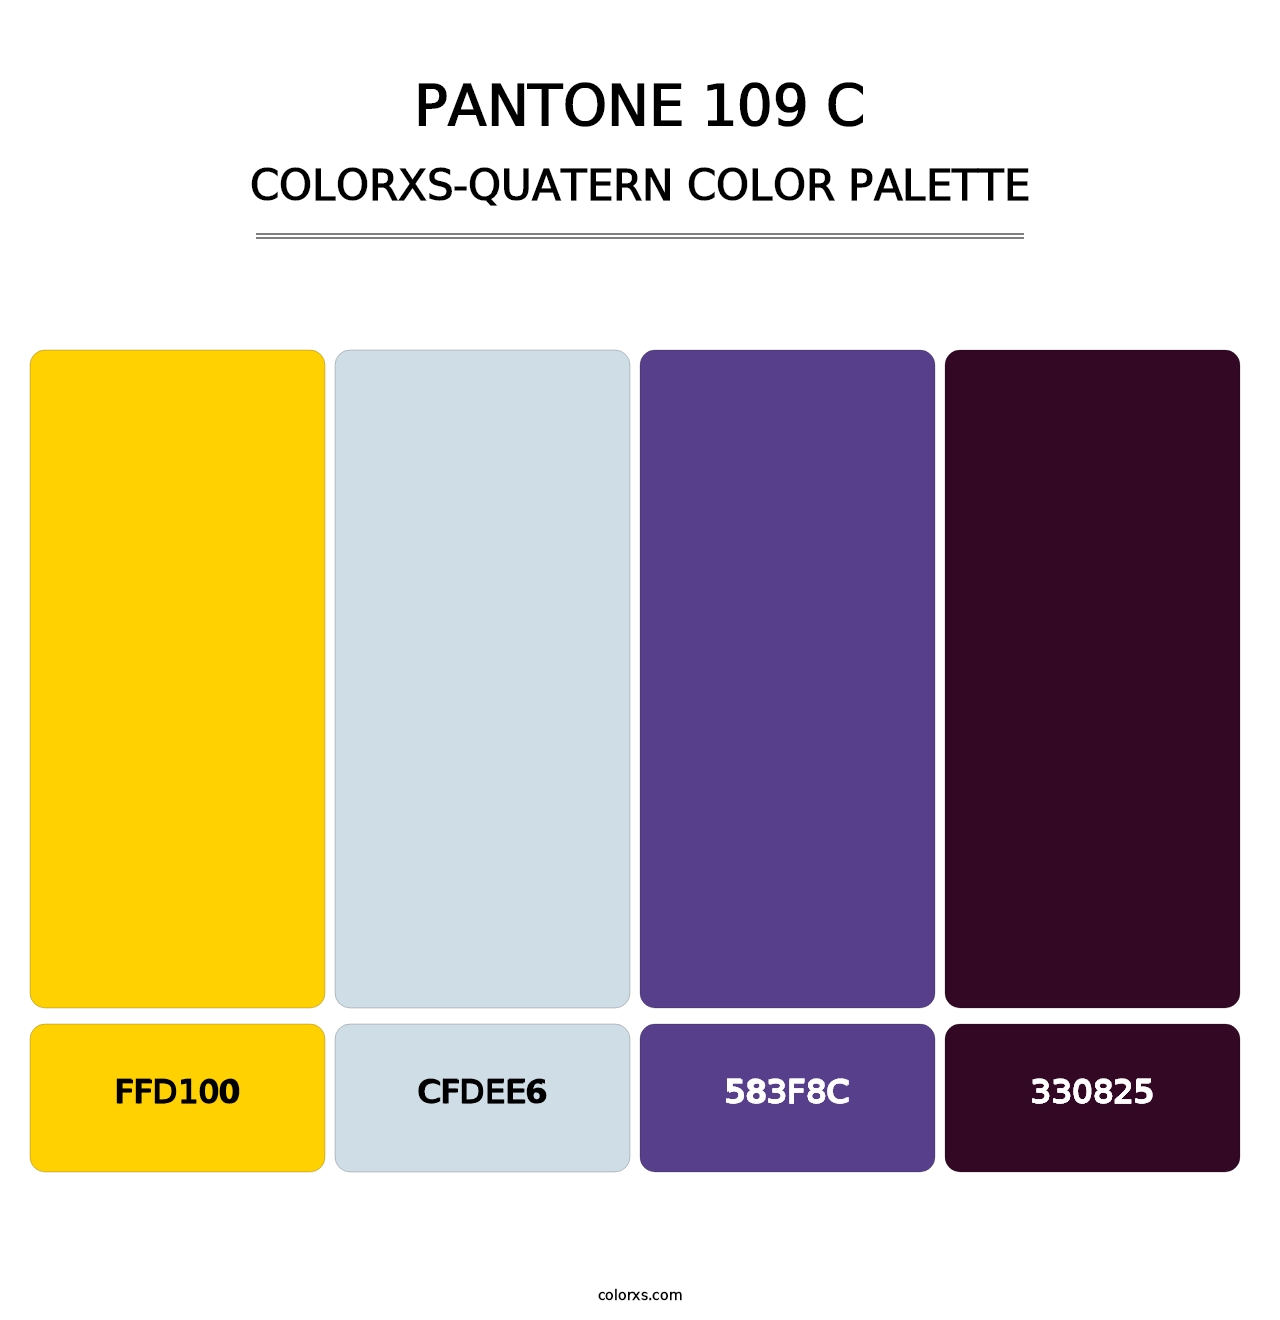 PANTONE 109 C - Colorxs Quatern Palette